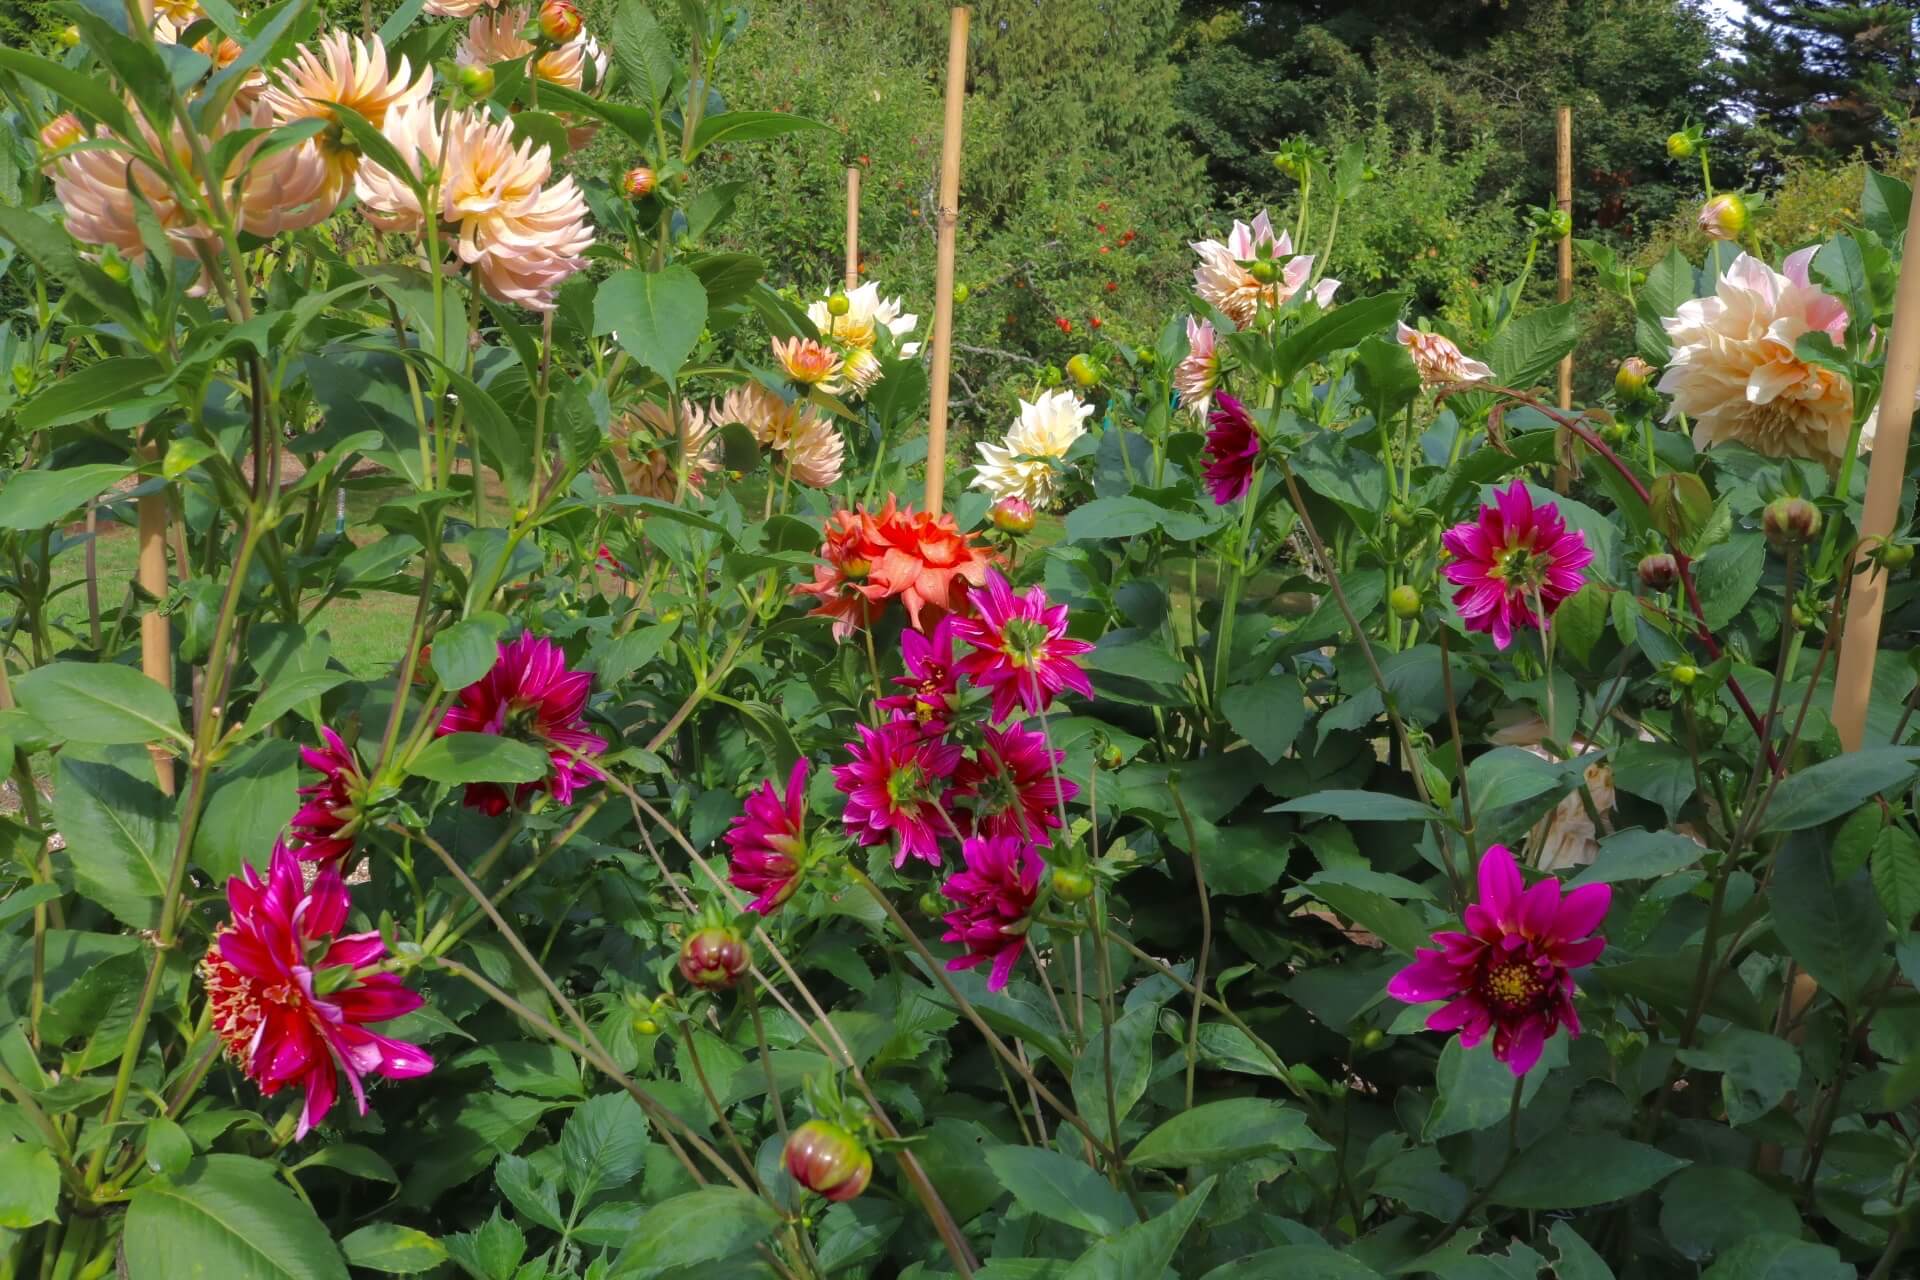 Mixed dahlias in a garden border